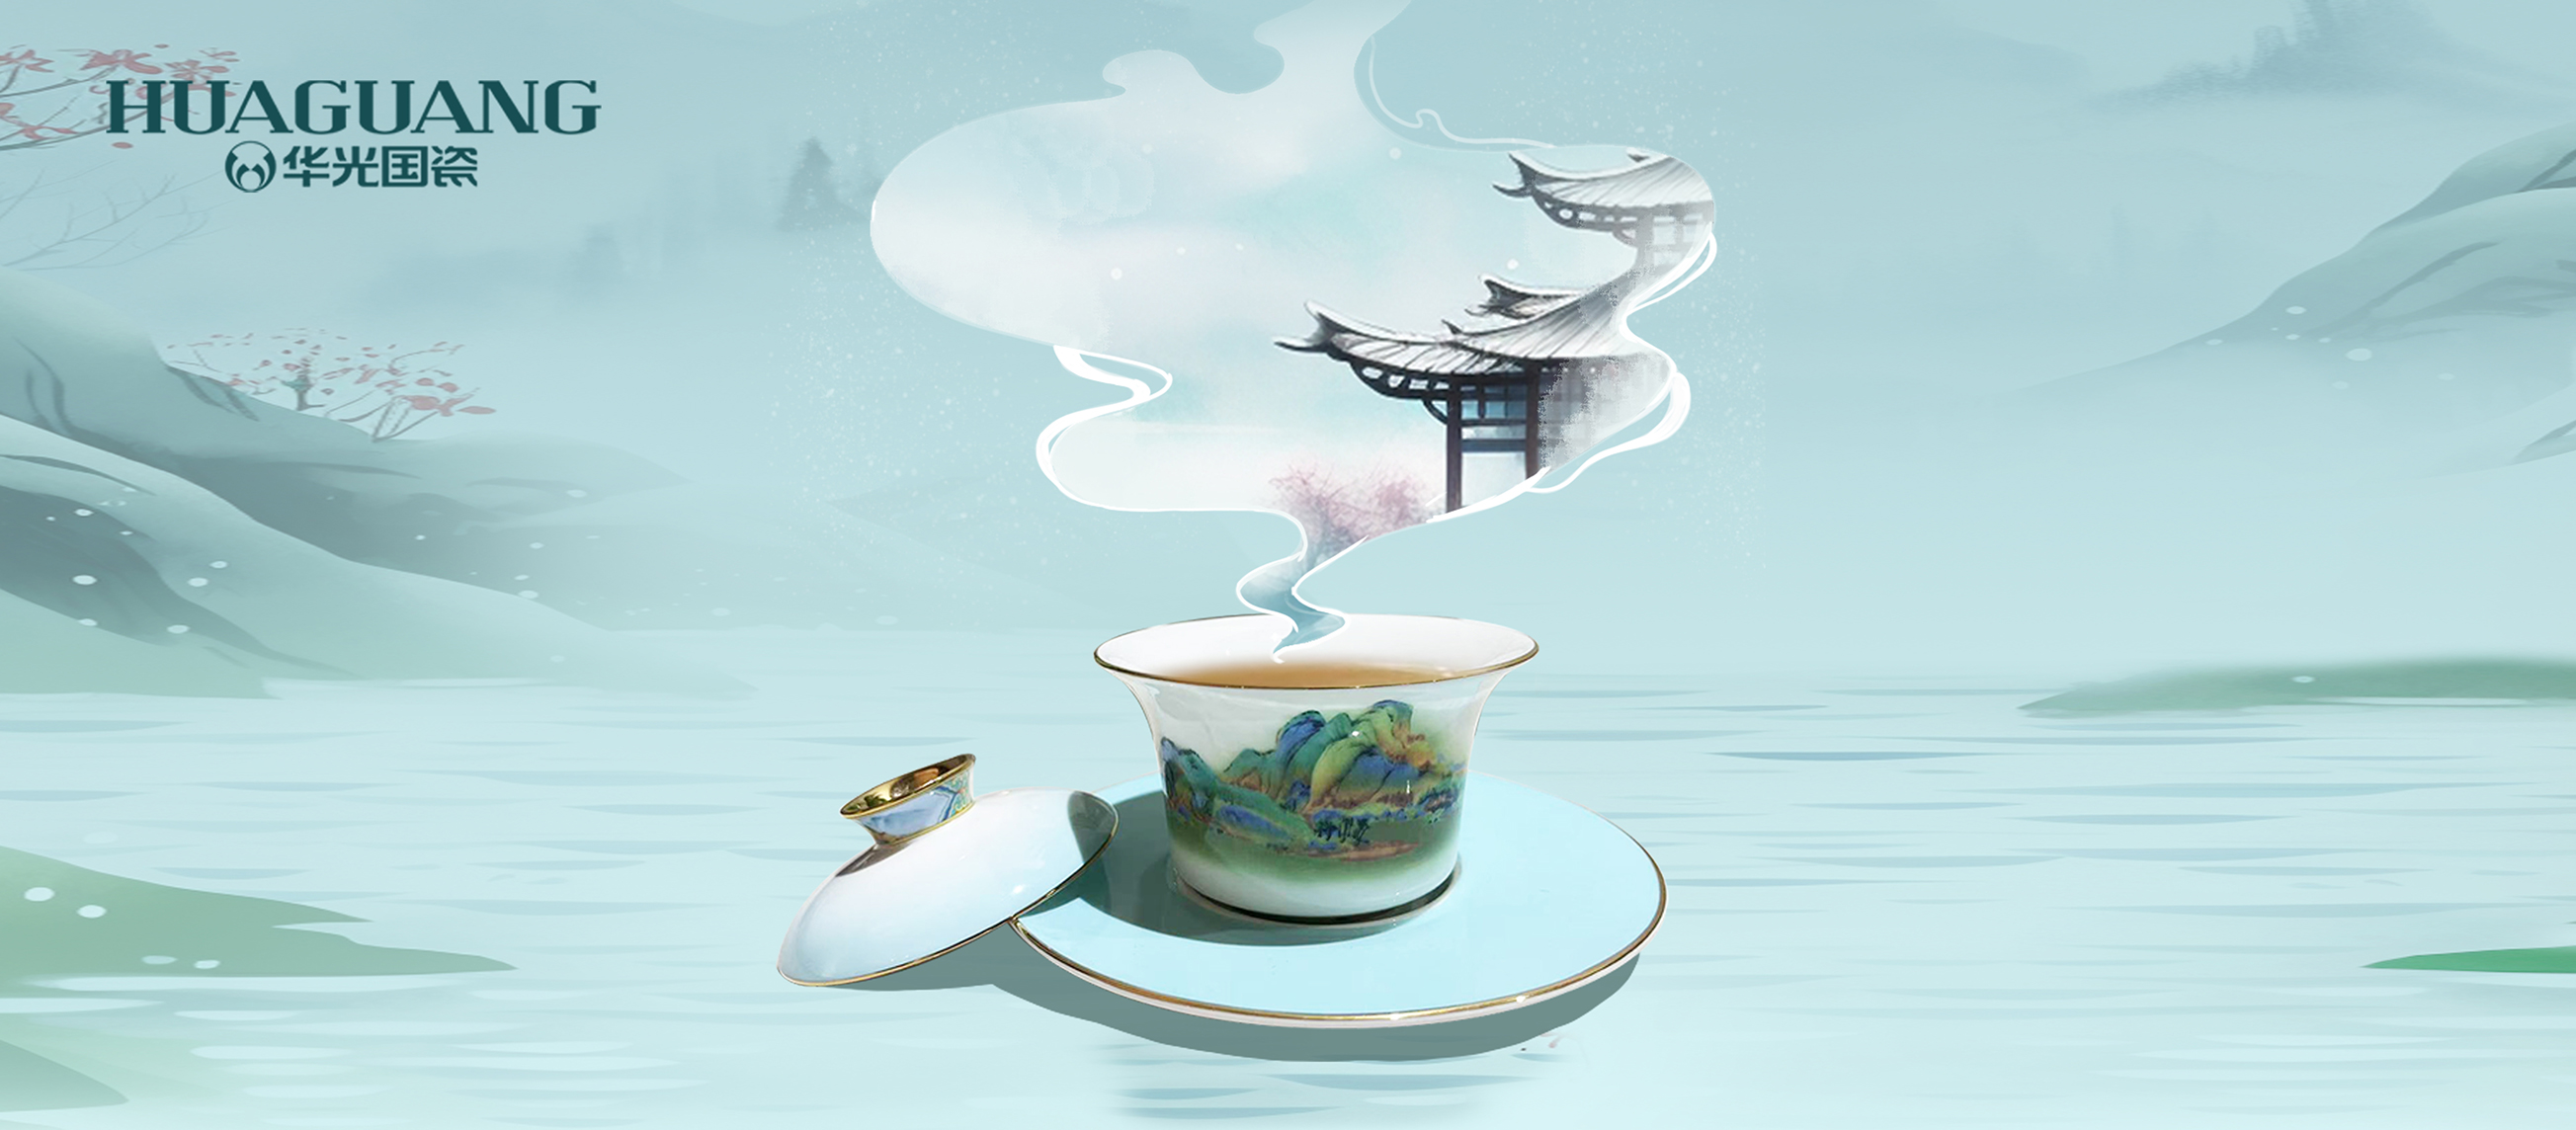 雪·茶·瓷丨天地人的风雅邂逅